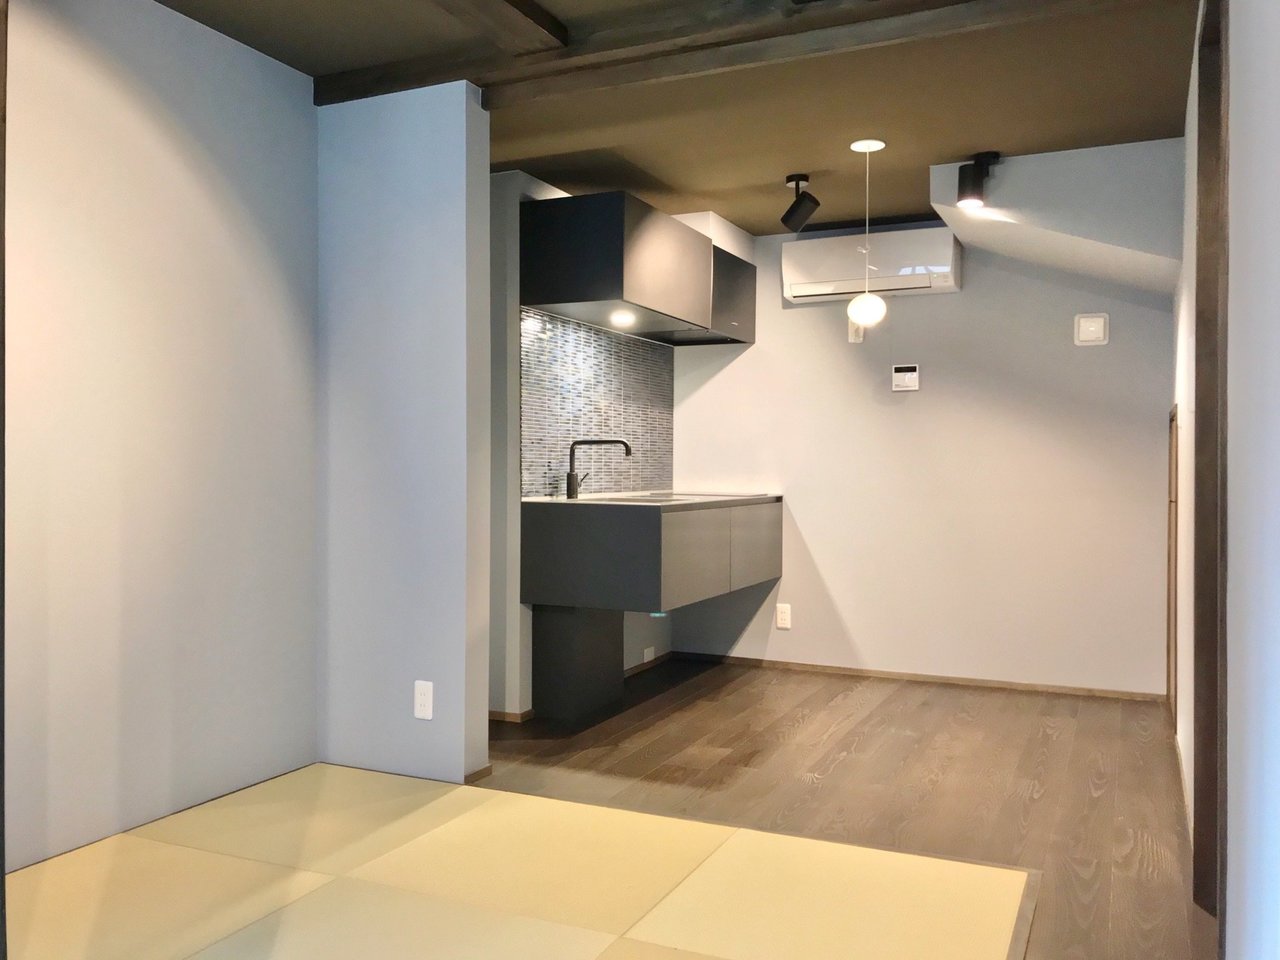 博多駅徒歩13分の便利な場所に誕生した和モダンな長屋。1階には琉球畳でくつろげるスペース。文机を置いて、文豪気分で仕事するのも良さそうです。